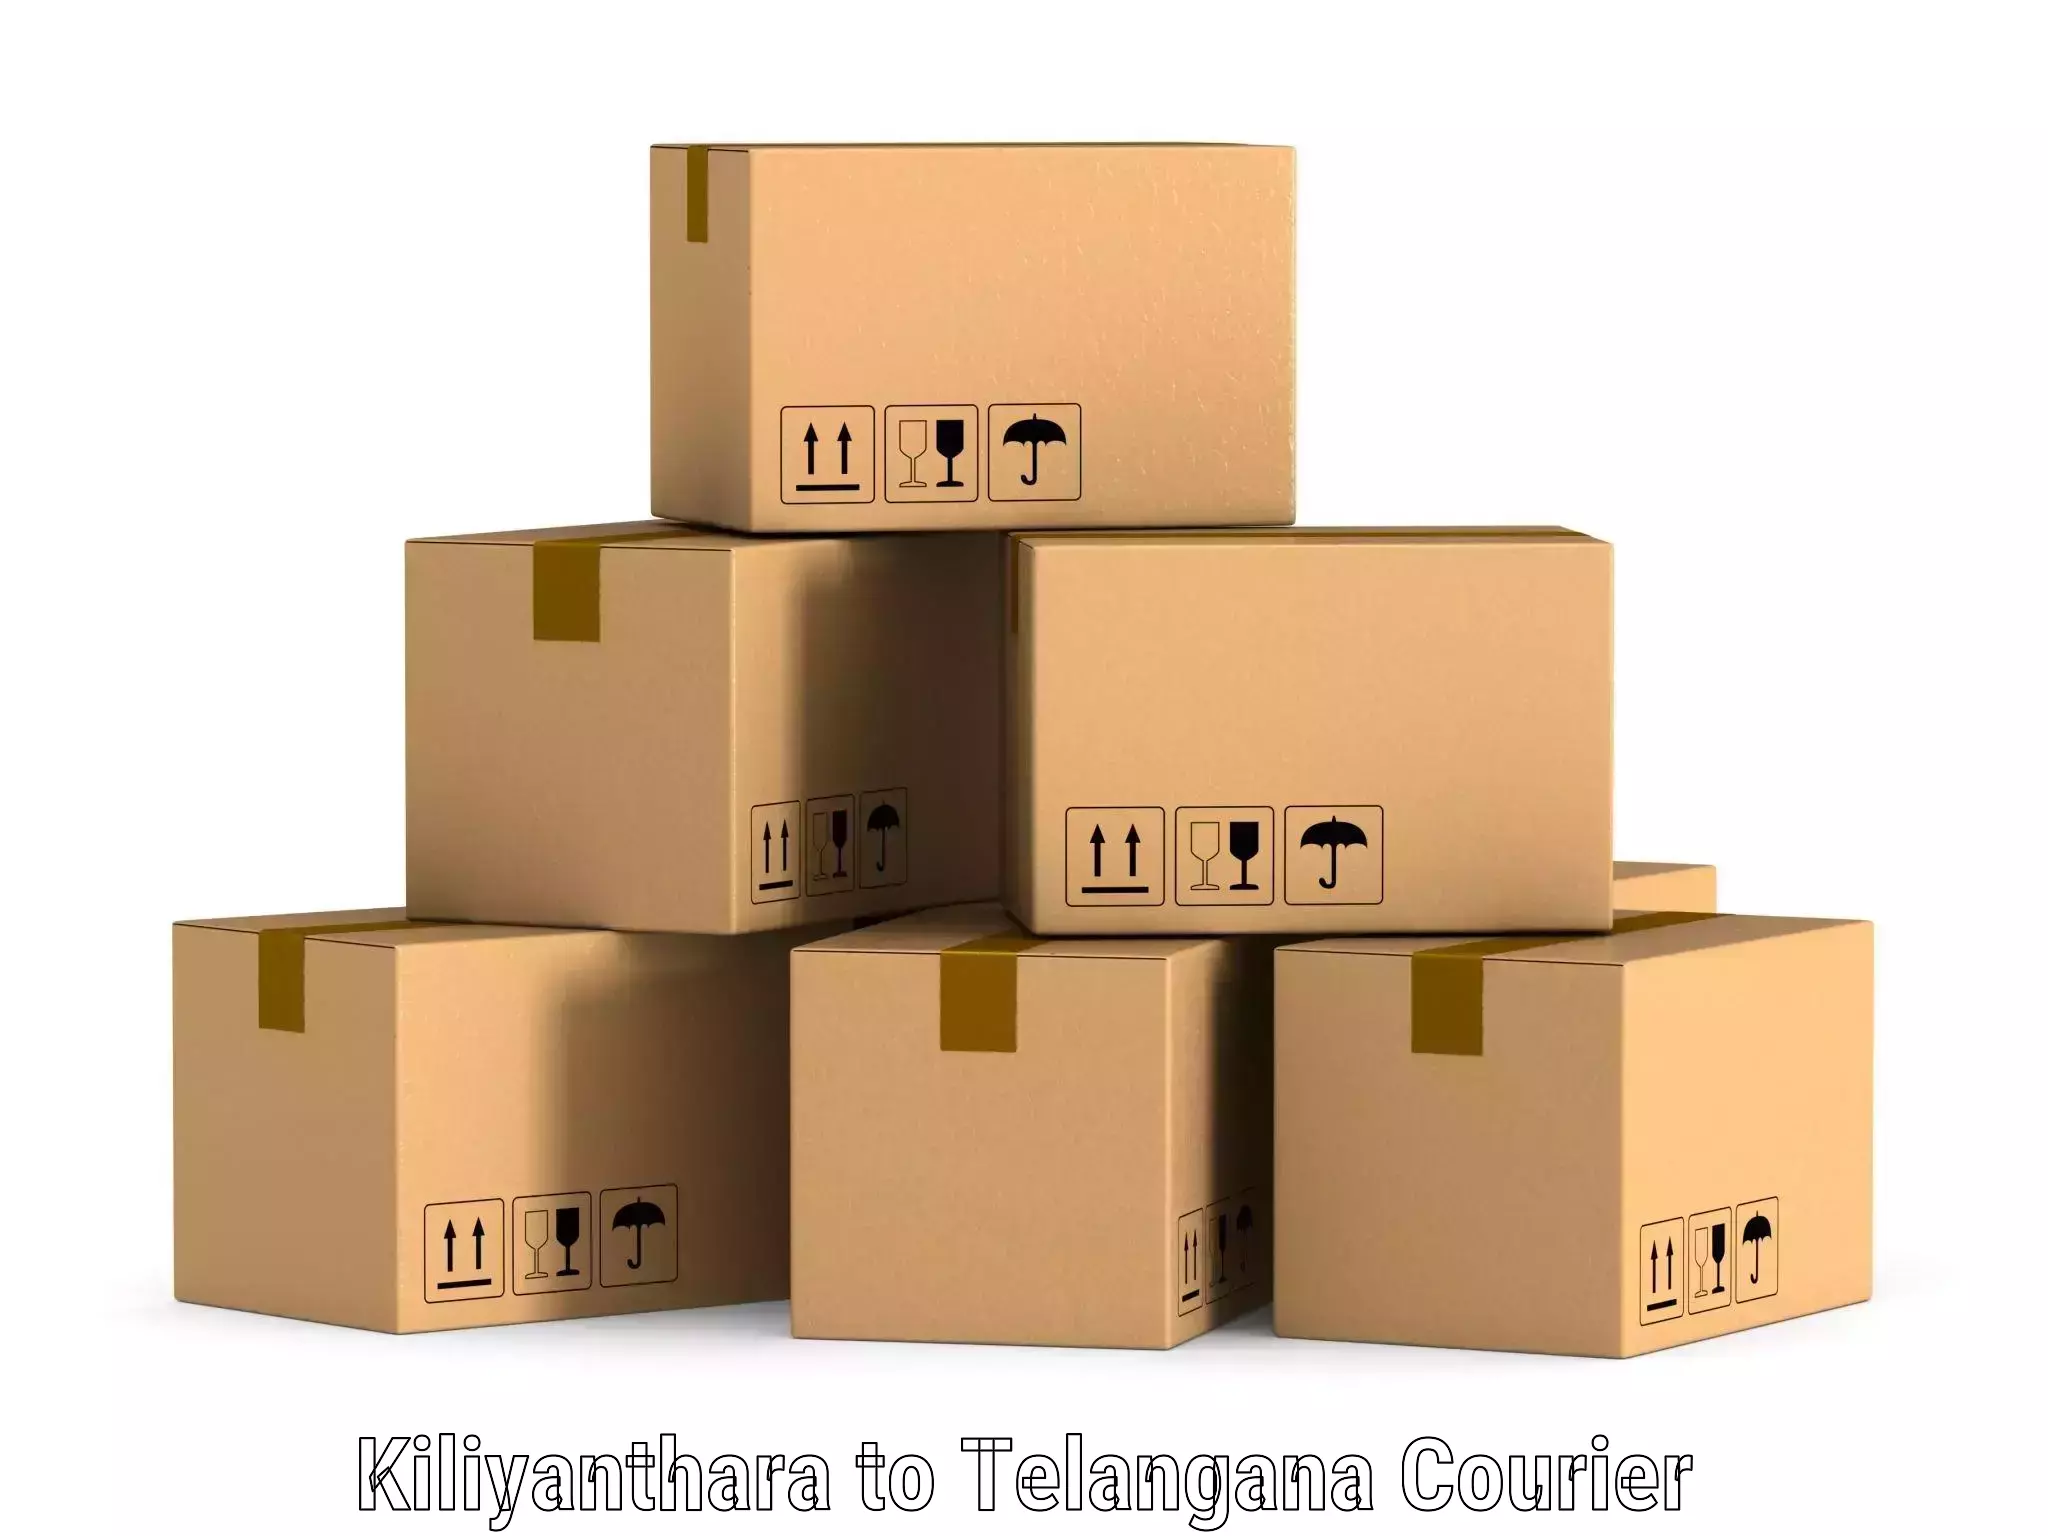 Cost-effective shipping solutions Kiliyanthara to Telangana